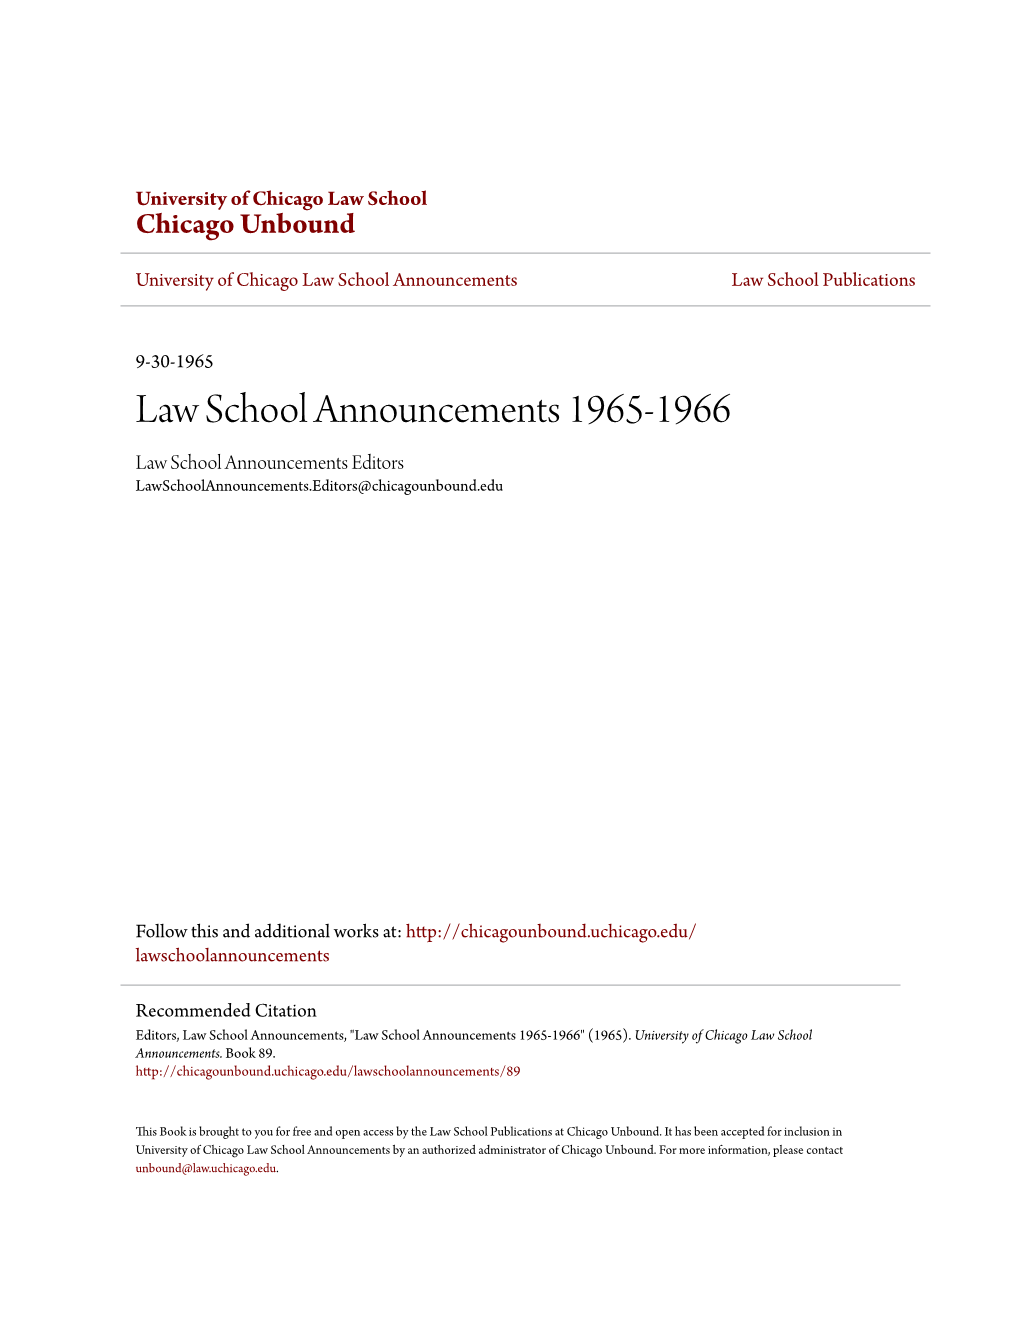 Law School Announcements 1965-1966 Law School Announcements Editors Lawschoolannouncements.Editors@Chicagounbound.Edu